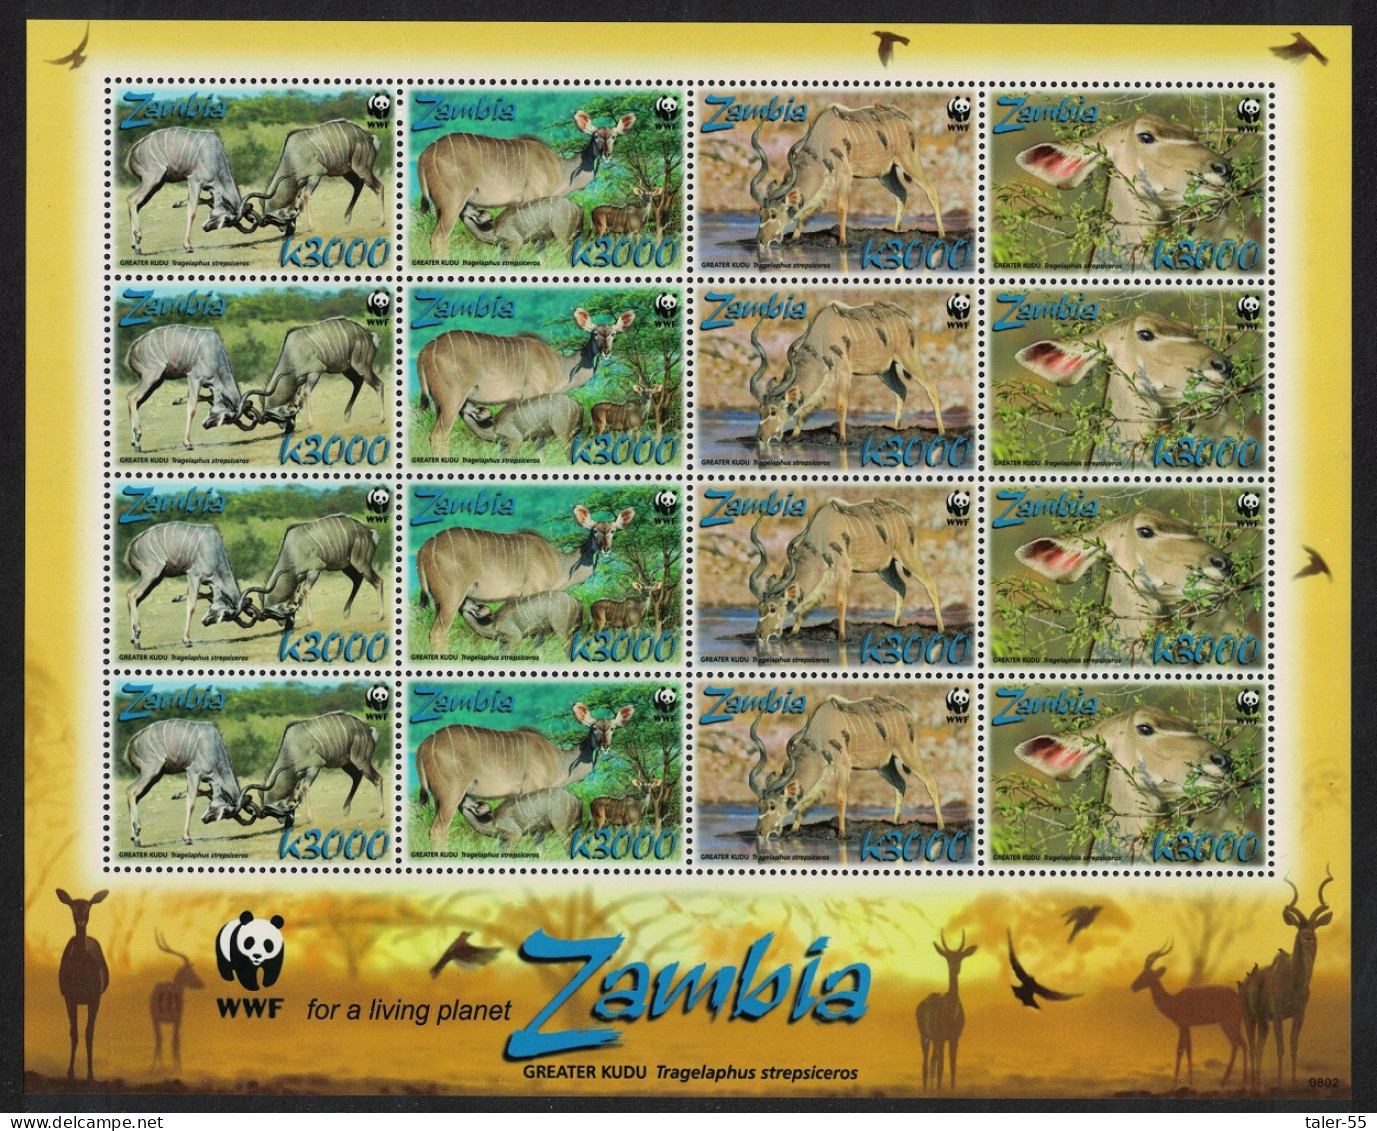 Zambia WWF Greater Kudu Sheetlet Of 4 Sets 2008 MNH SG#1049-1052 MI#1606-1609 Sc#1103a-d - Zambia (1965-...)